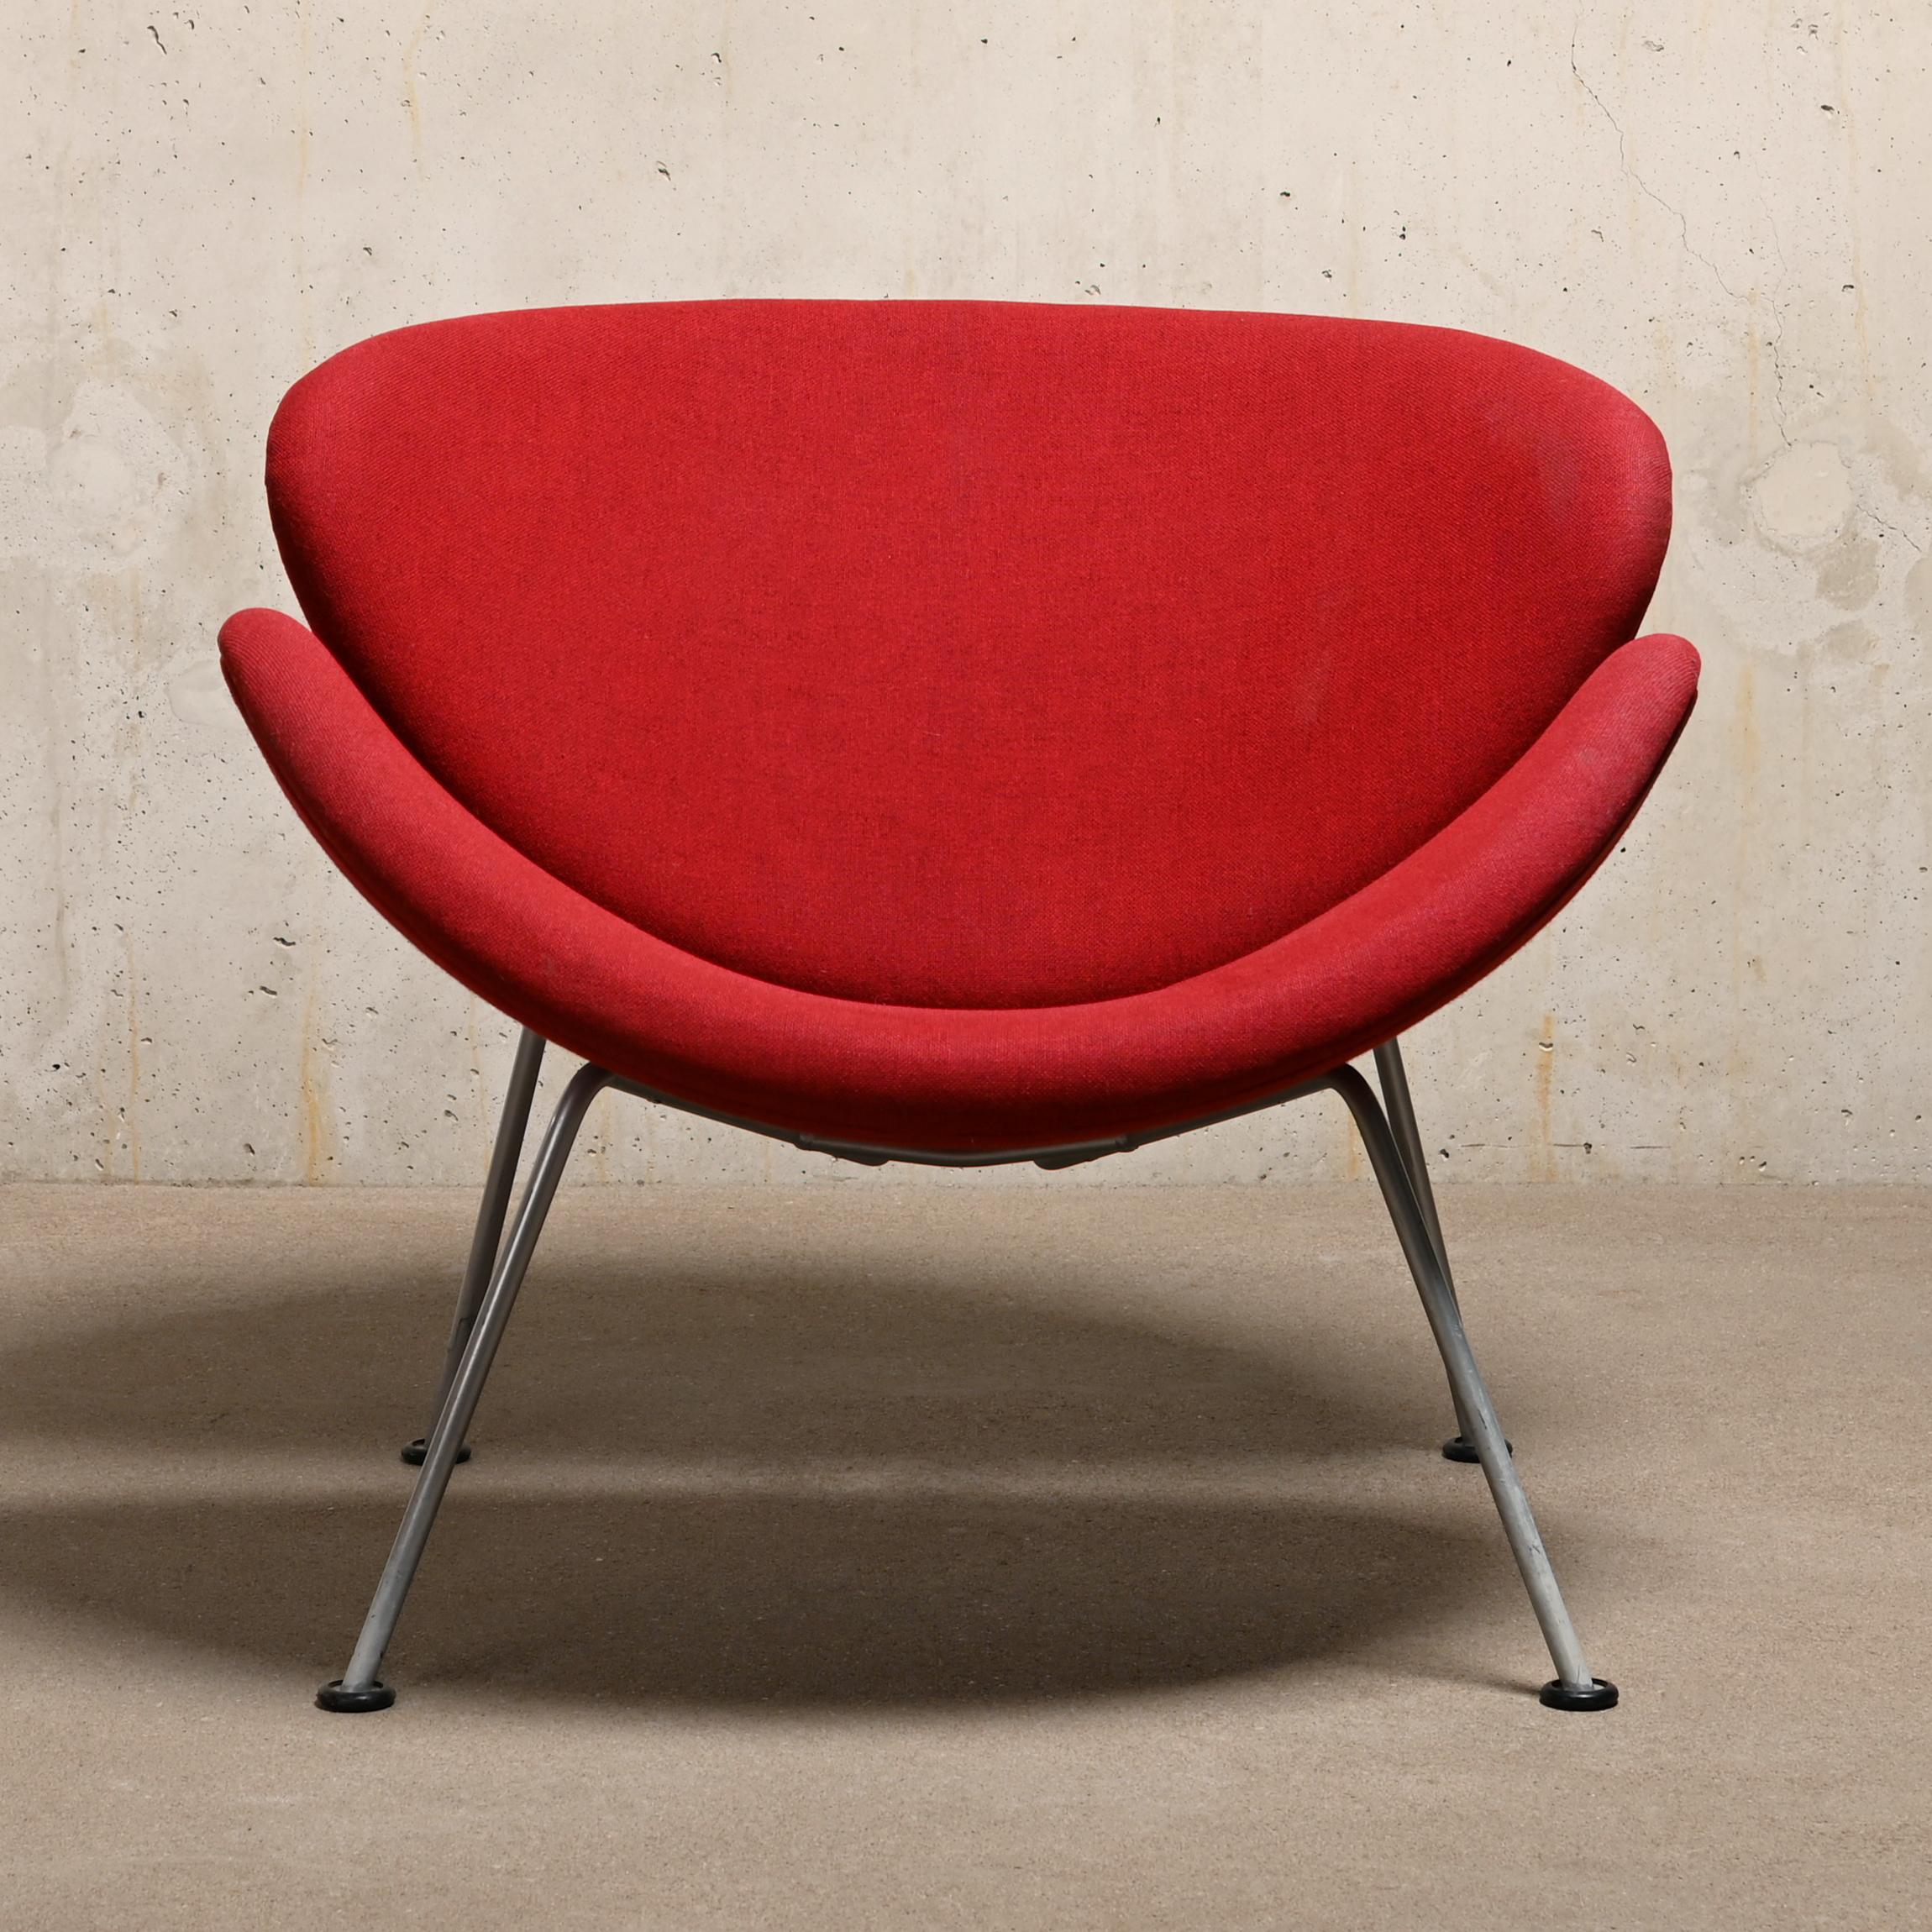 Bequemer und gemütlicher Sessel, entworfen von Pierre Paulin für Artifort. Stahlgestell mit geformten Holzschalen, die mit Schaumstoff überzogen und mit einem roten Originalstoff gepolstert sind. Der Stoff ist in gutem Vintage-Zustand mit leichten